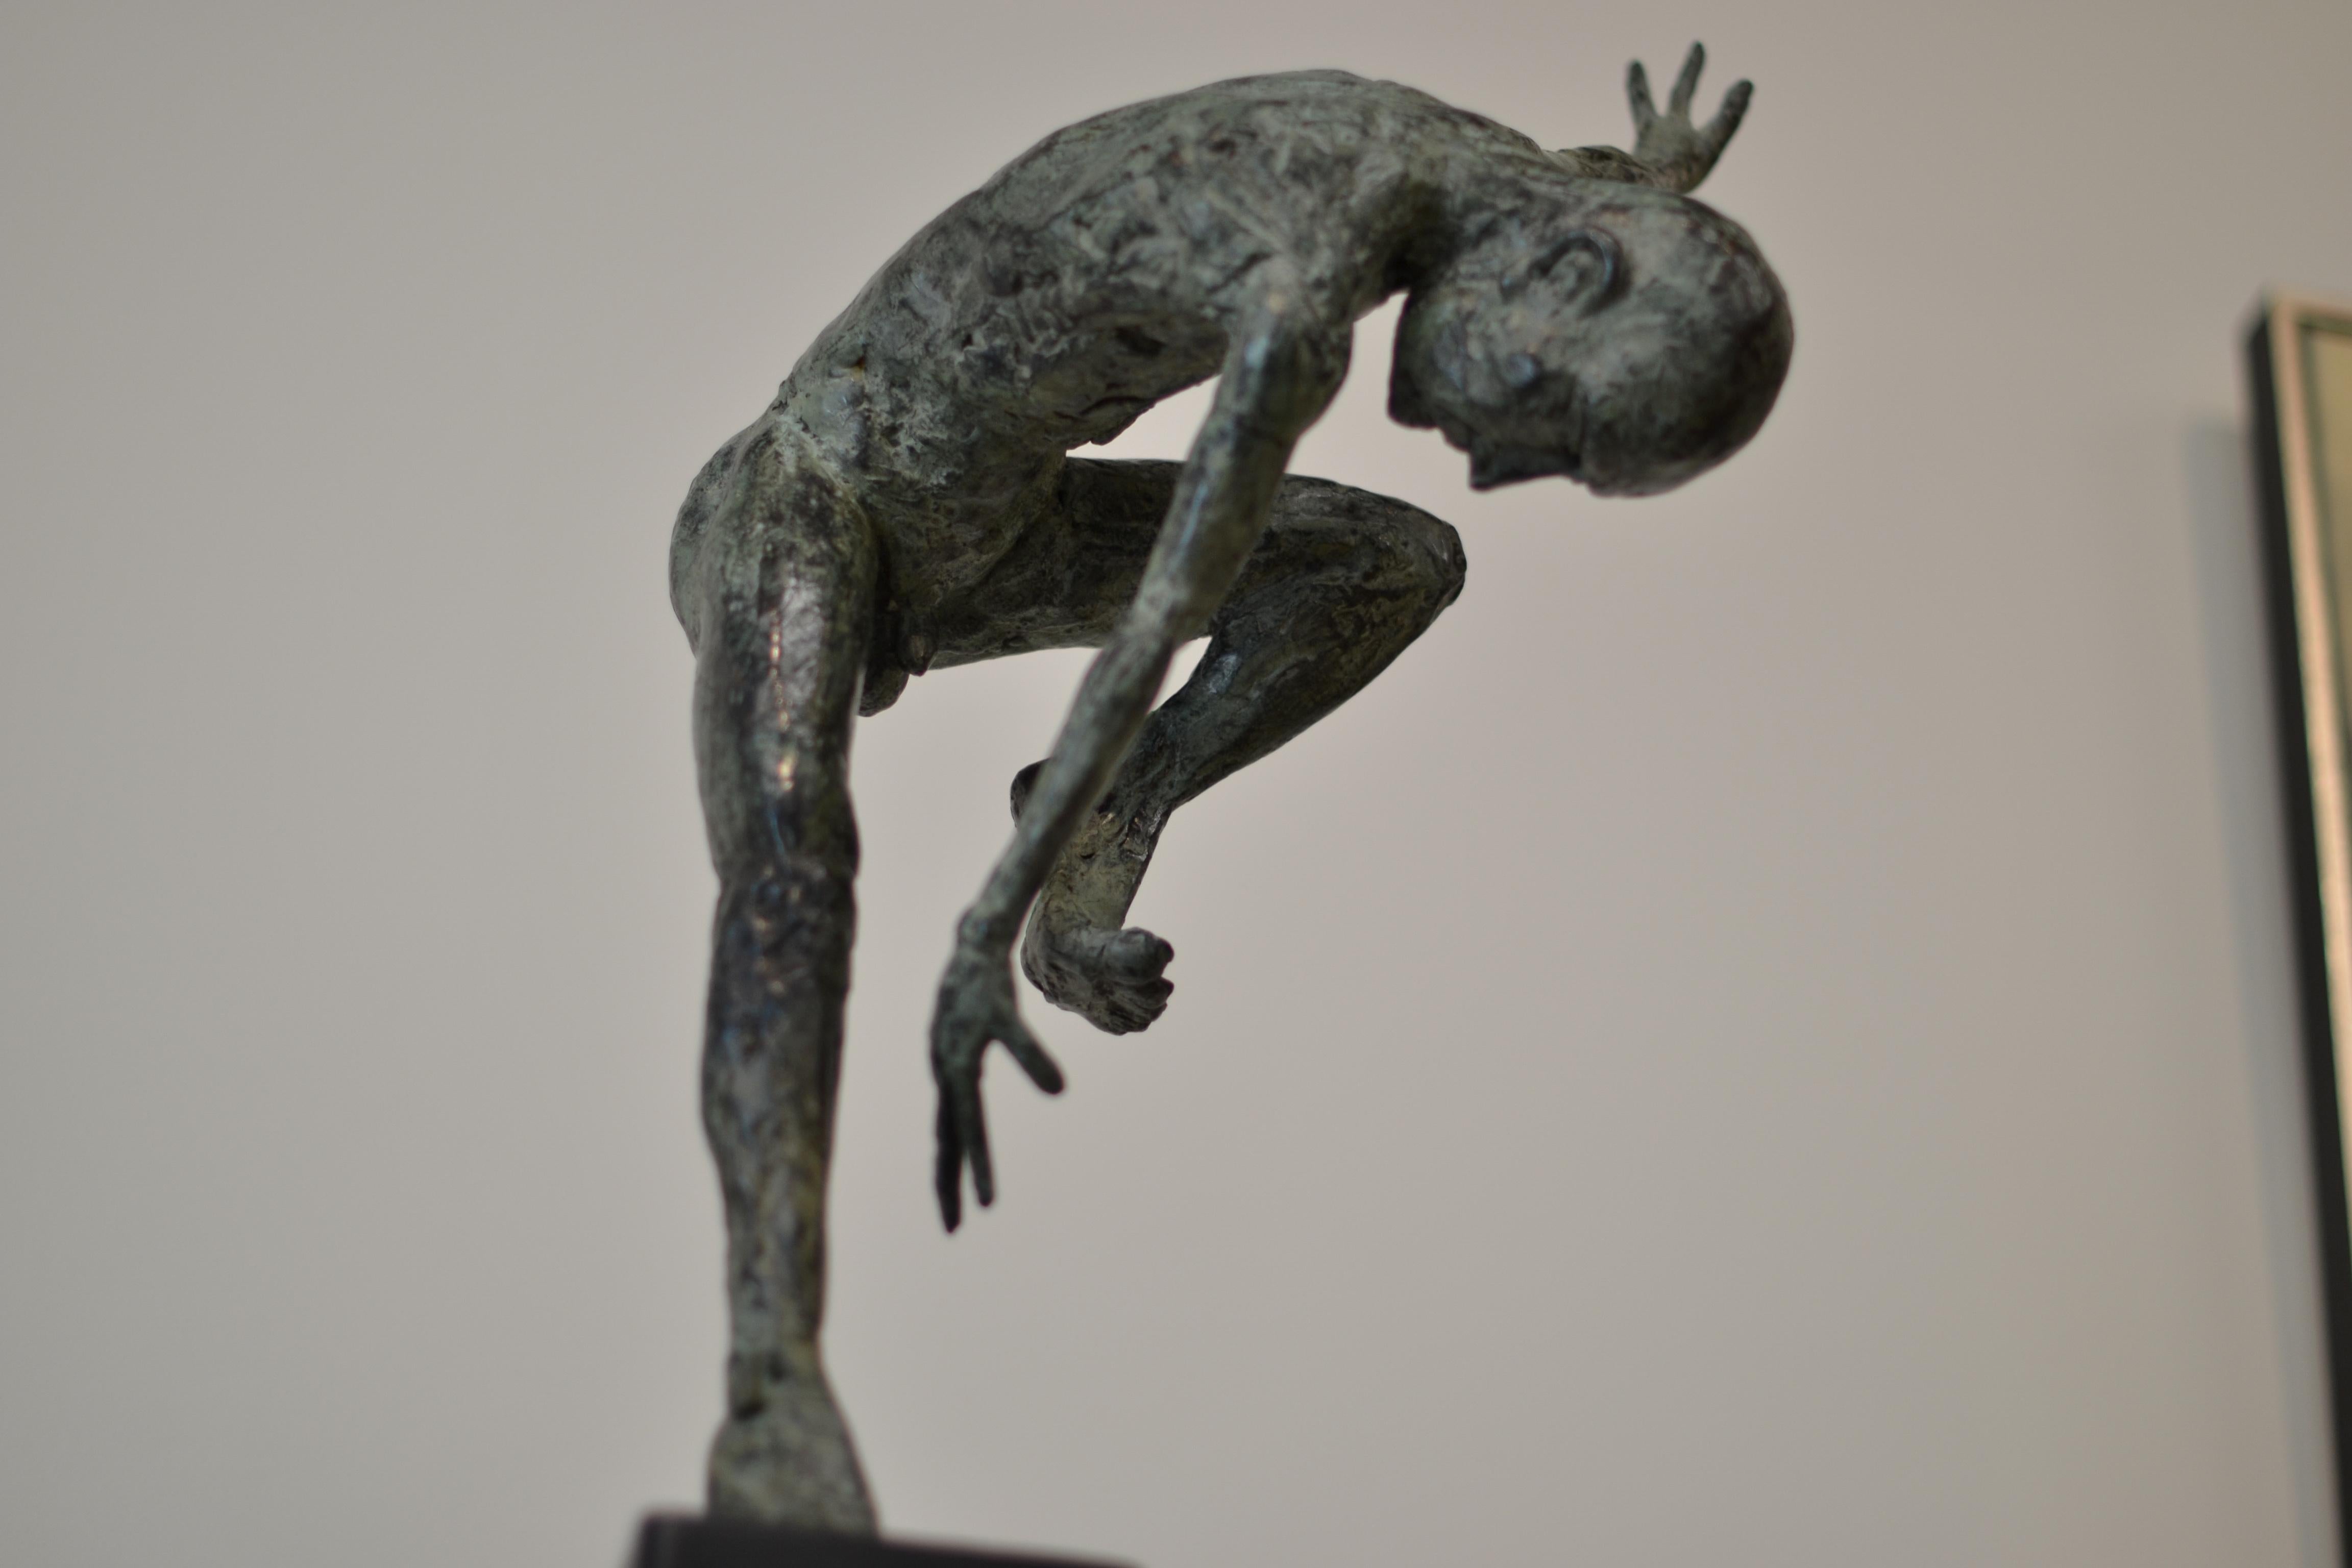 Dancer Satier - Martijn Soontiens, 21st Century Contemporary Sculpture For Sale 3